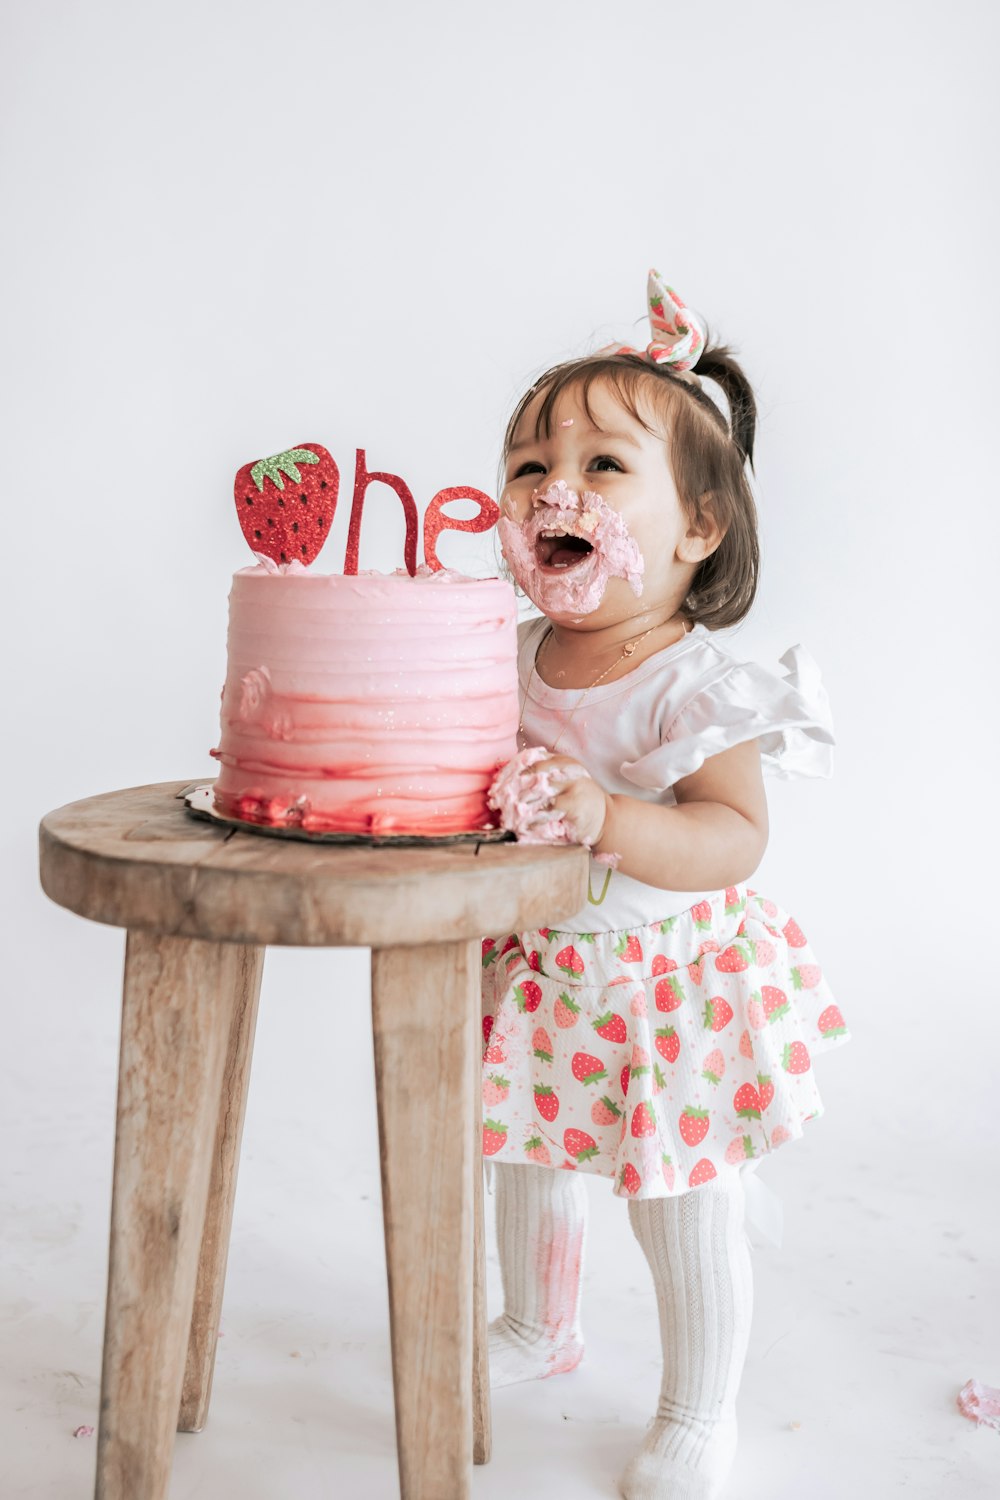 ピンクのケーキの前に座っている小さな女の子